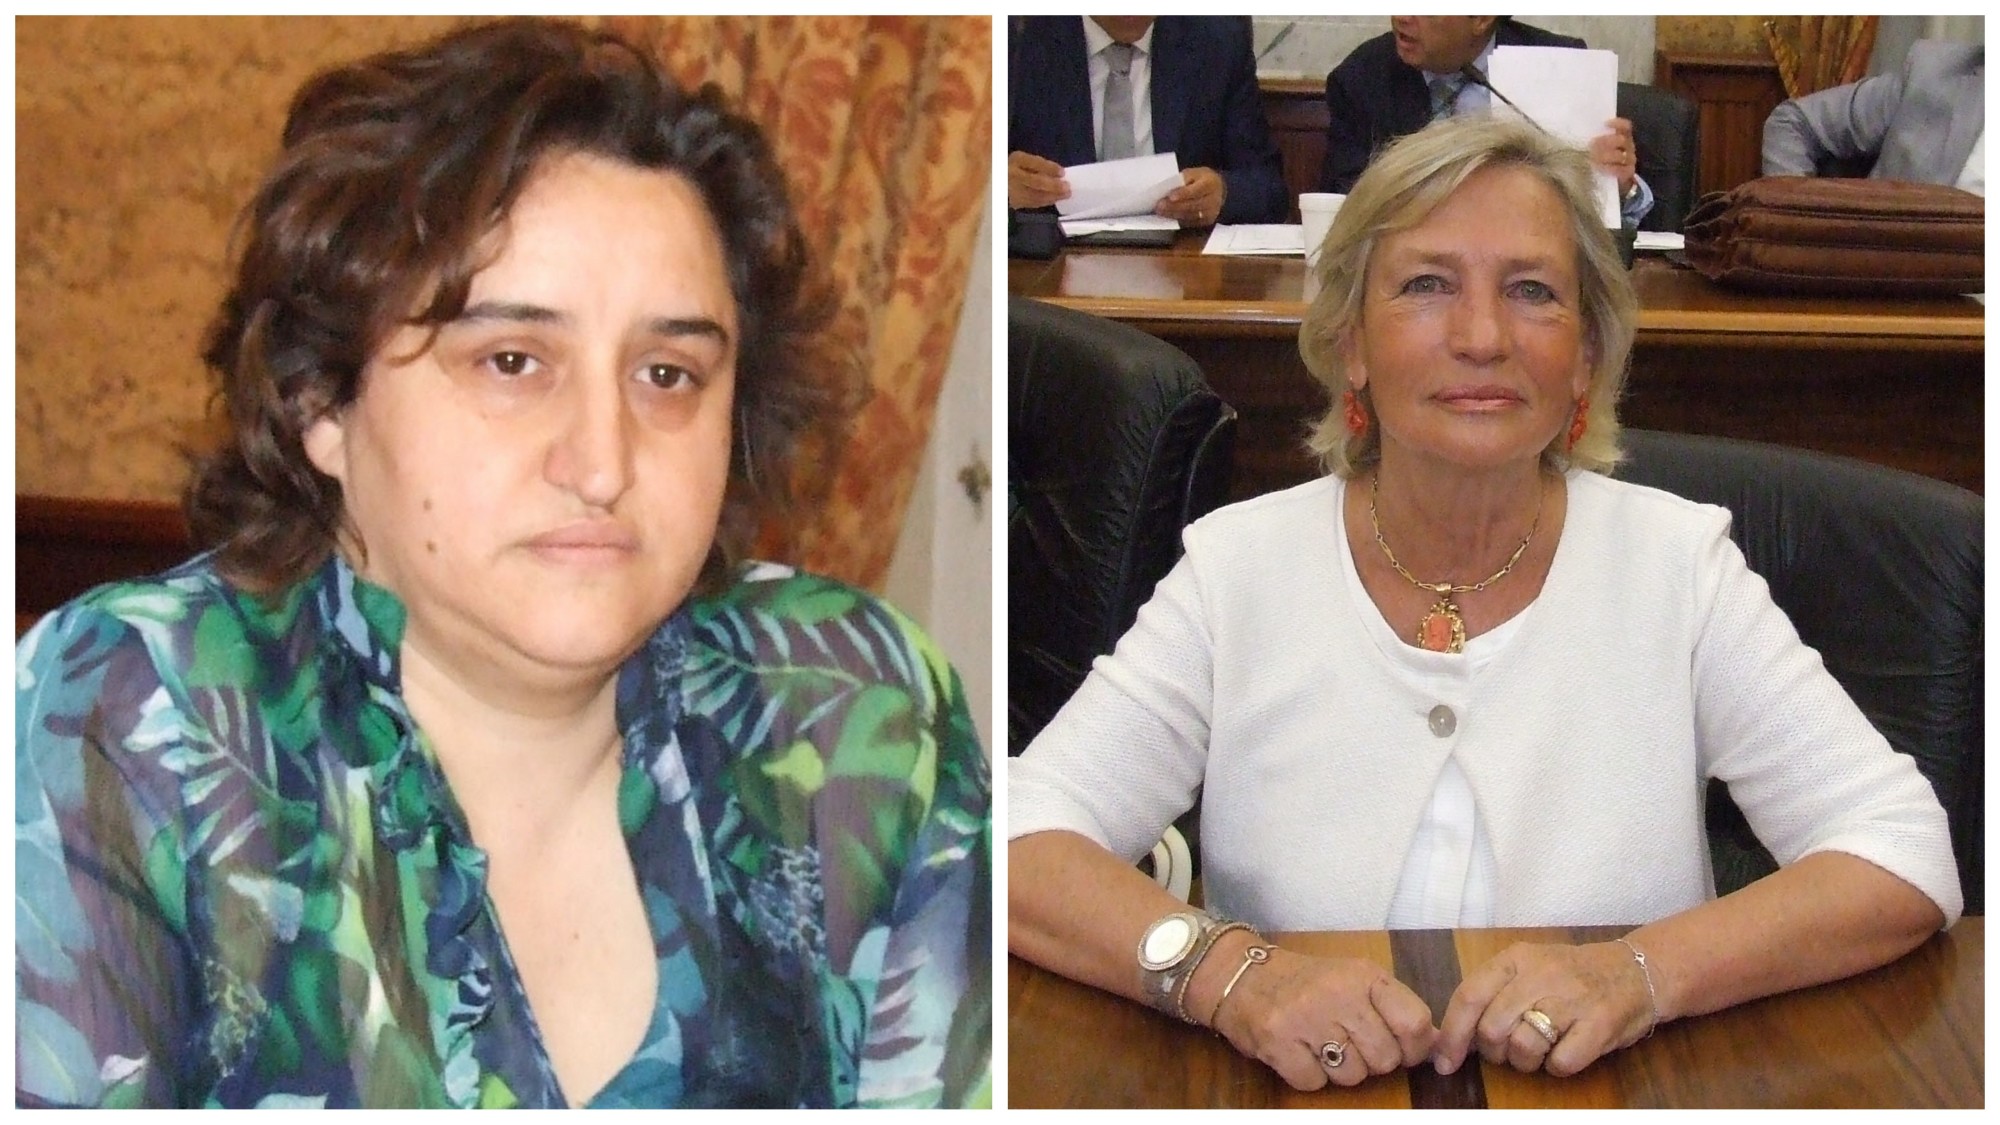 La consigliera Rosanna Genna chiede le dimissioni dell’assessore Clara Ruggieri